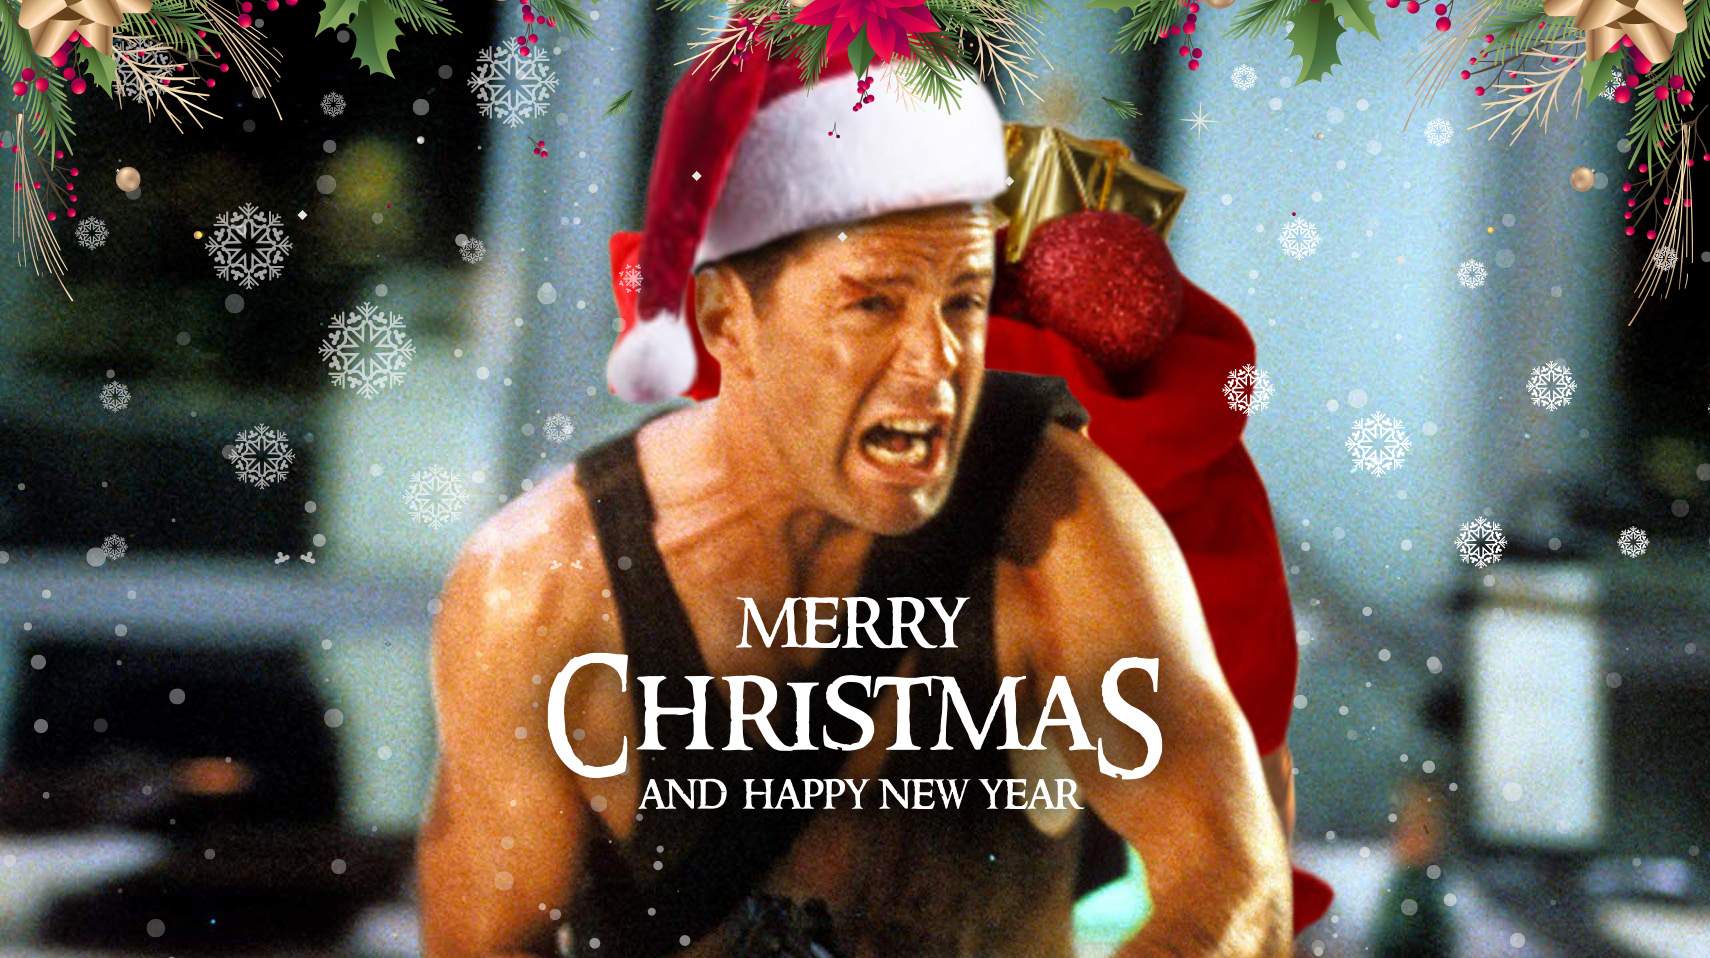 John McClane -Bruce Willis- es un héroe navideño. Y ya basta de dudas.